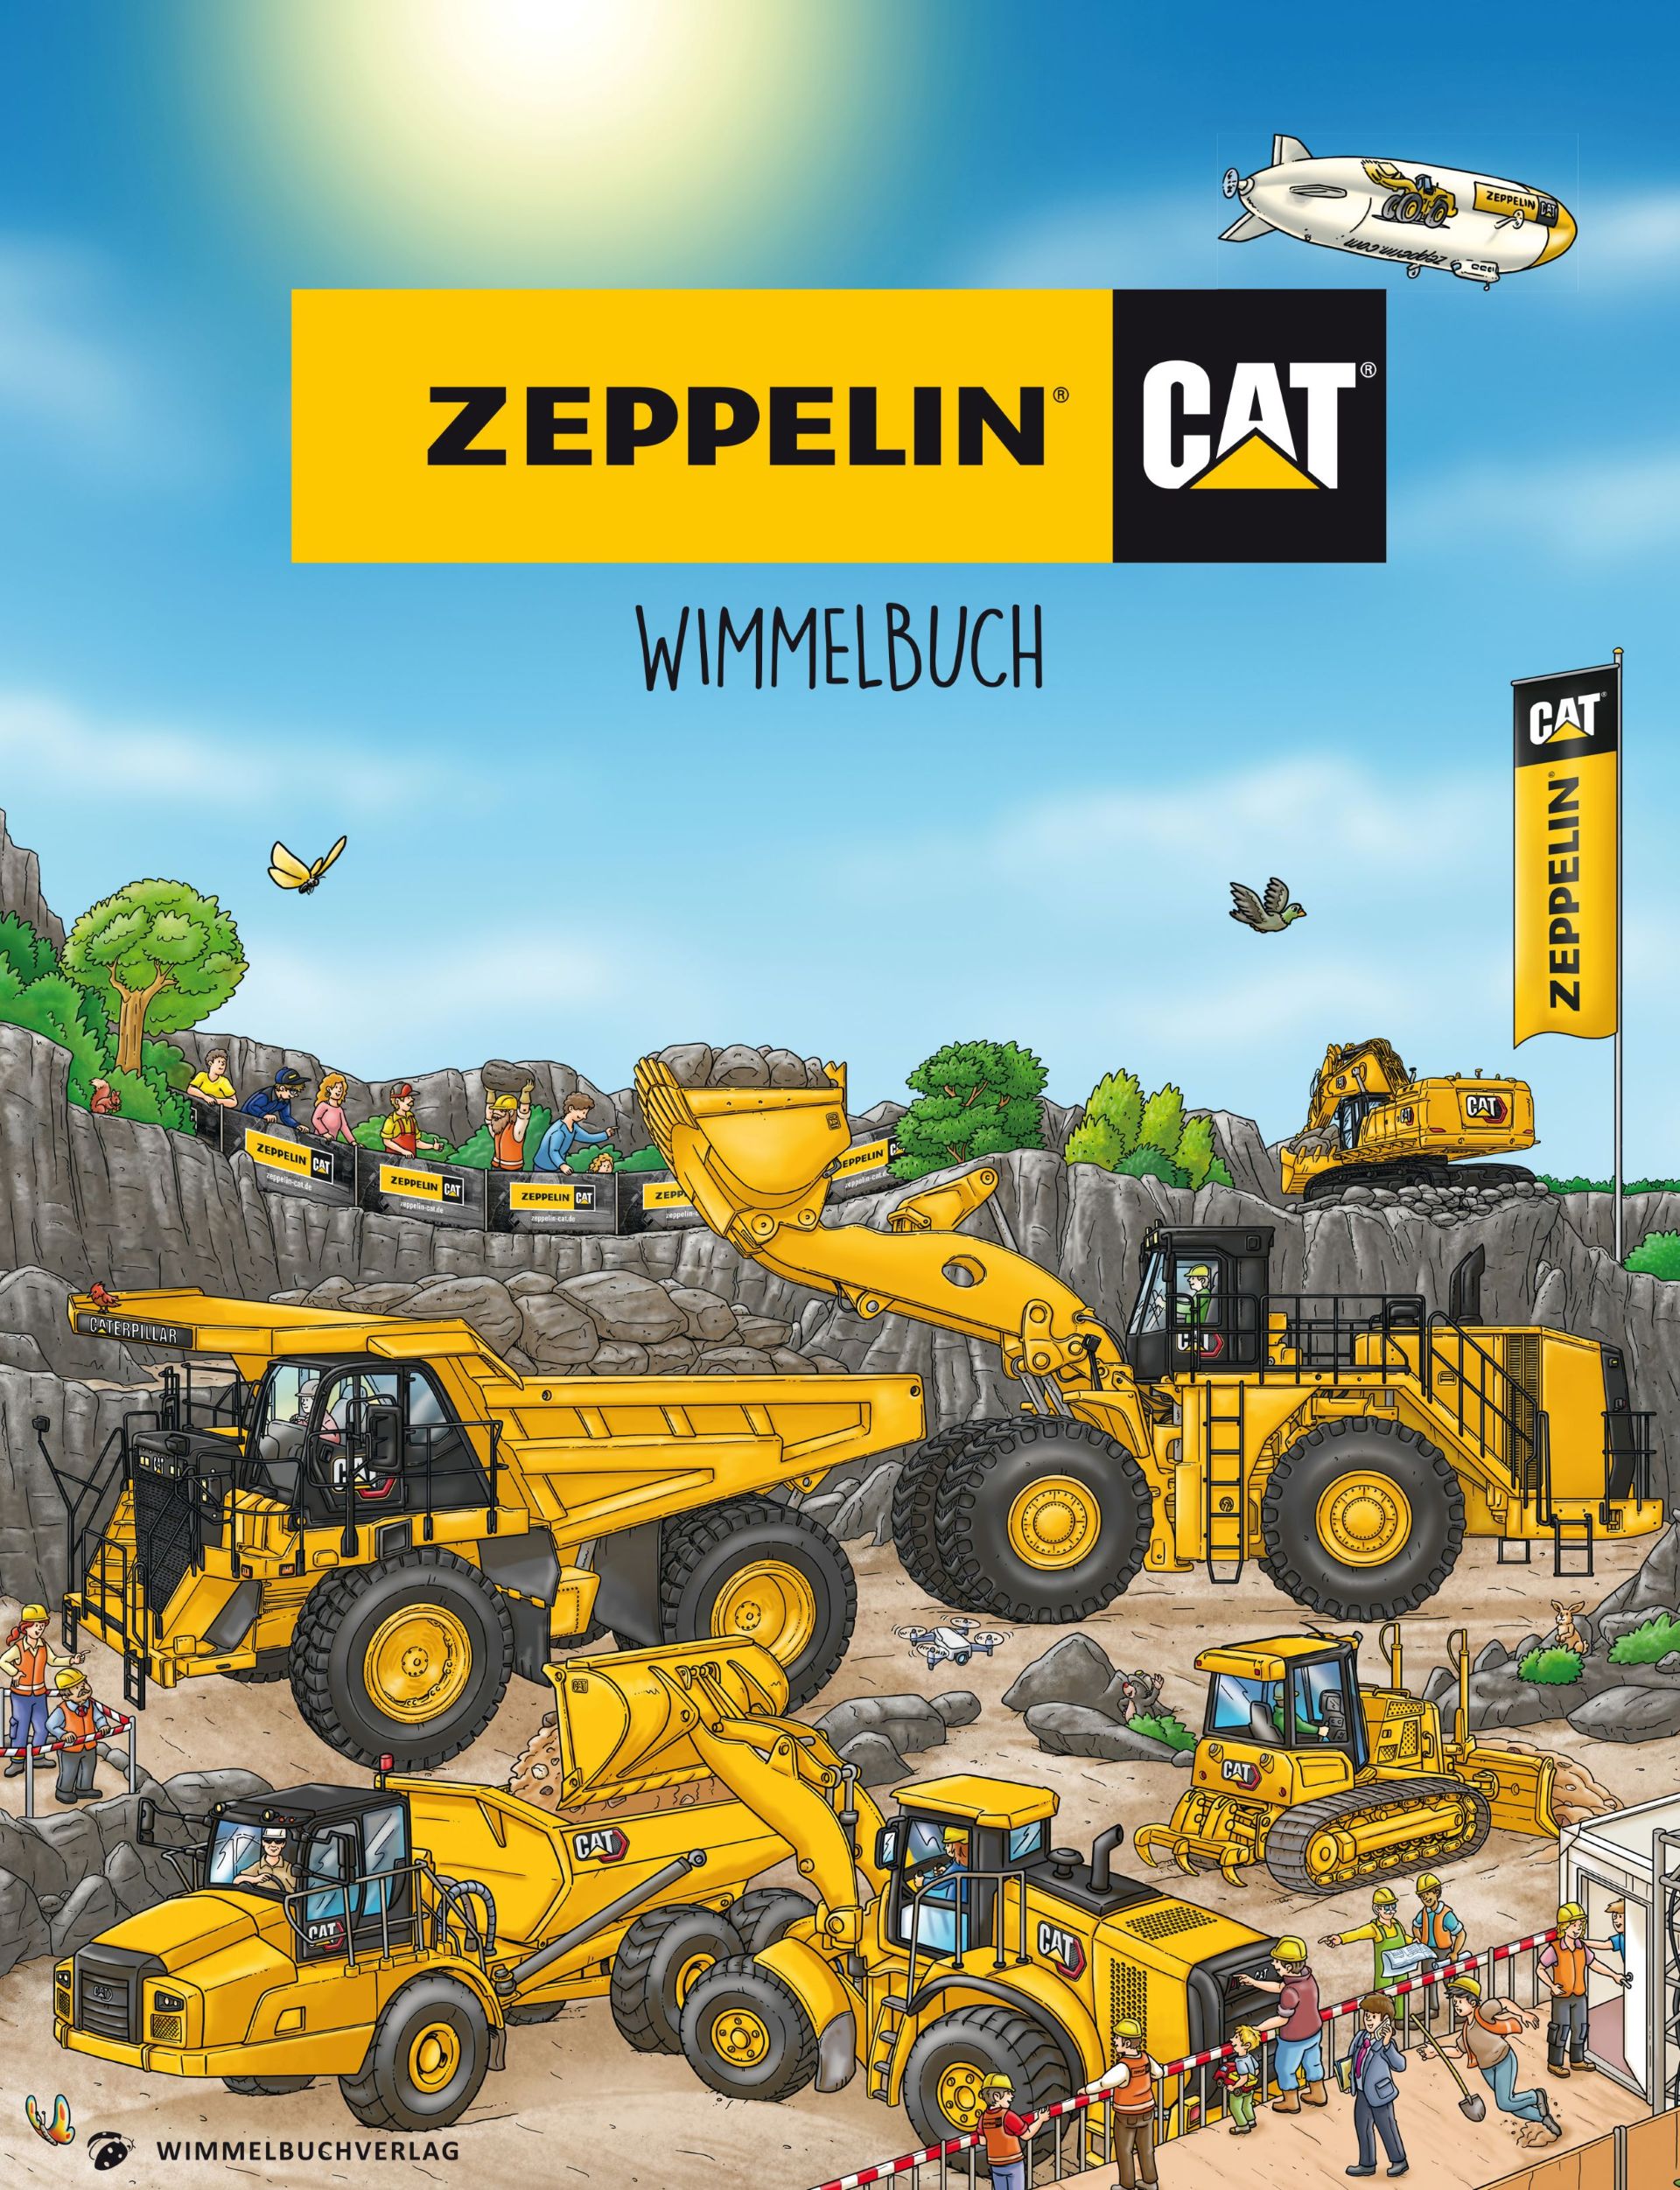 Zeppelin_Cat-Wimmelbuch Bild 3.jpg